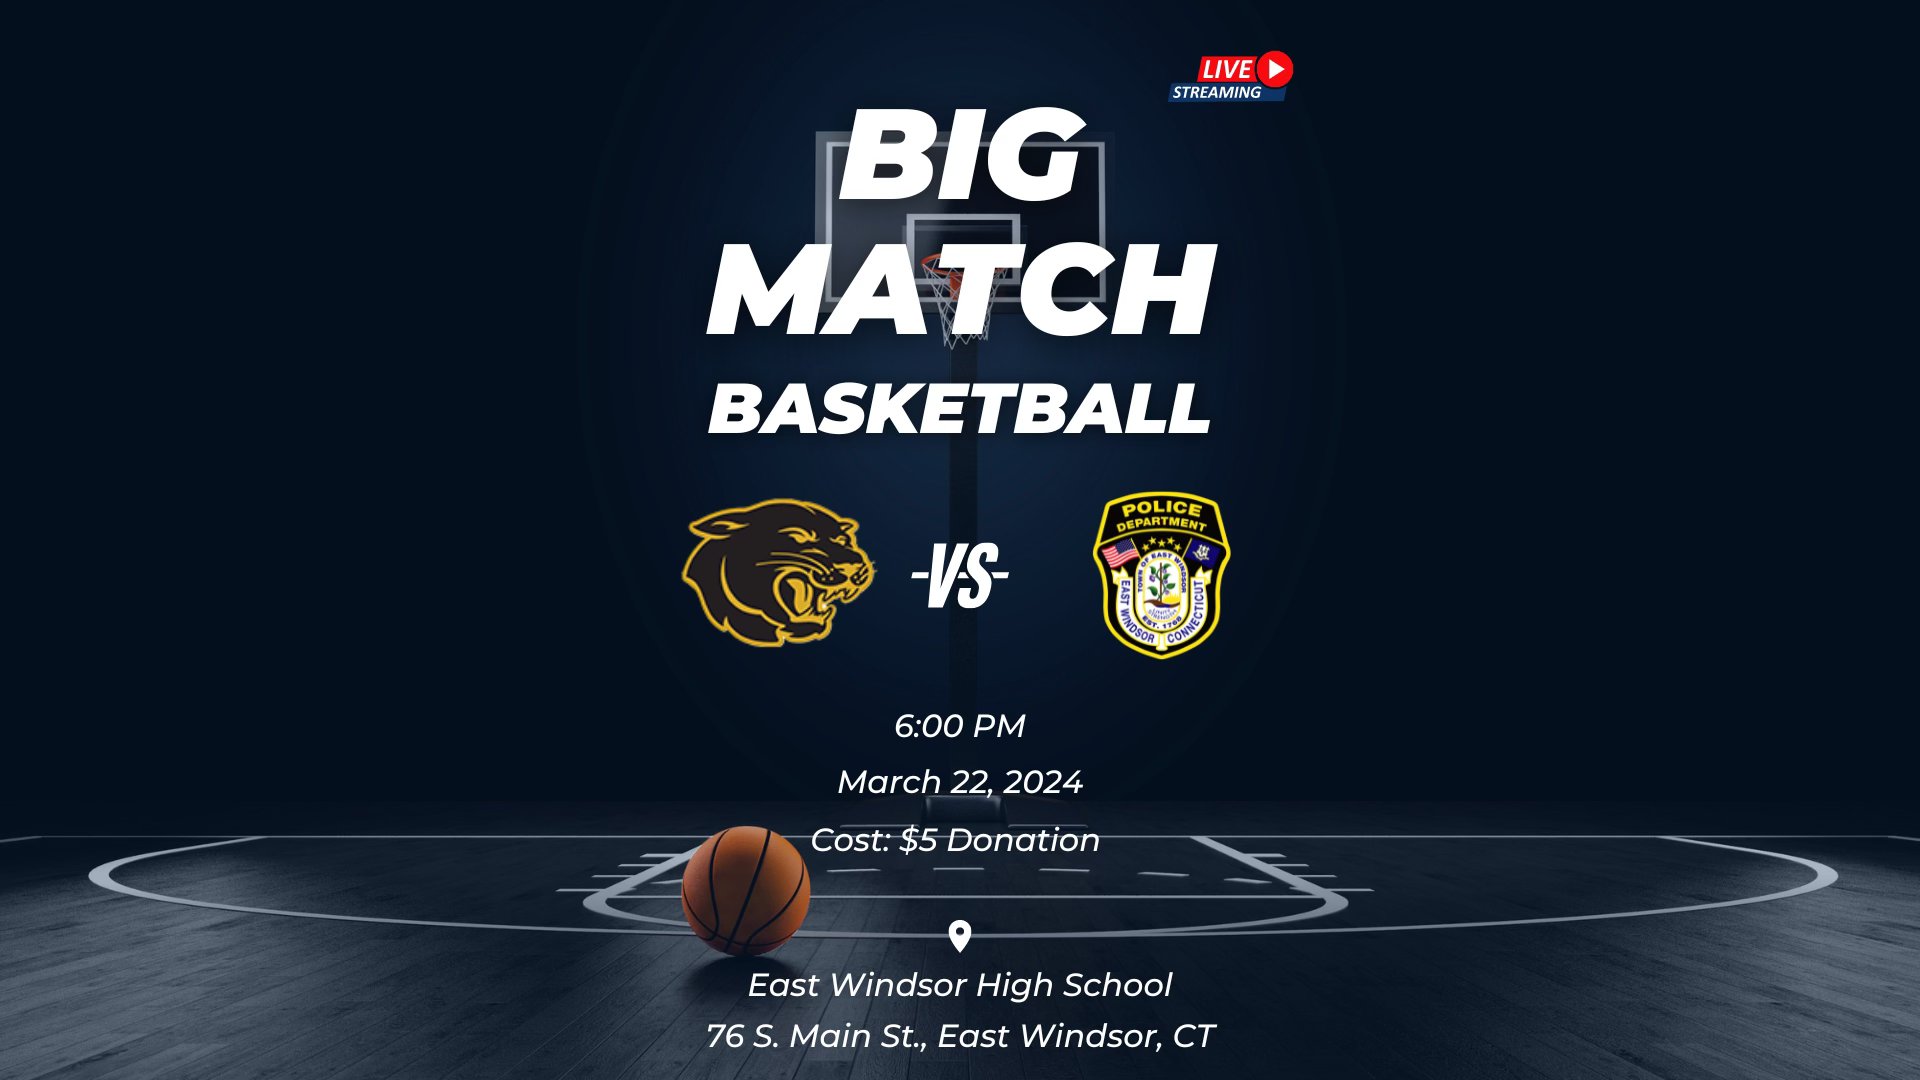 Co-Ed Charity Basketball Game @ East Windsor High School